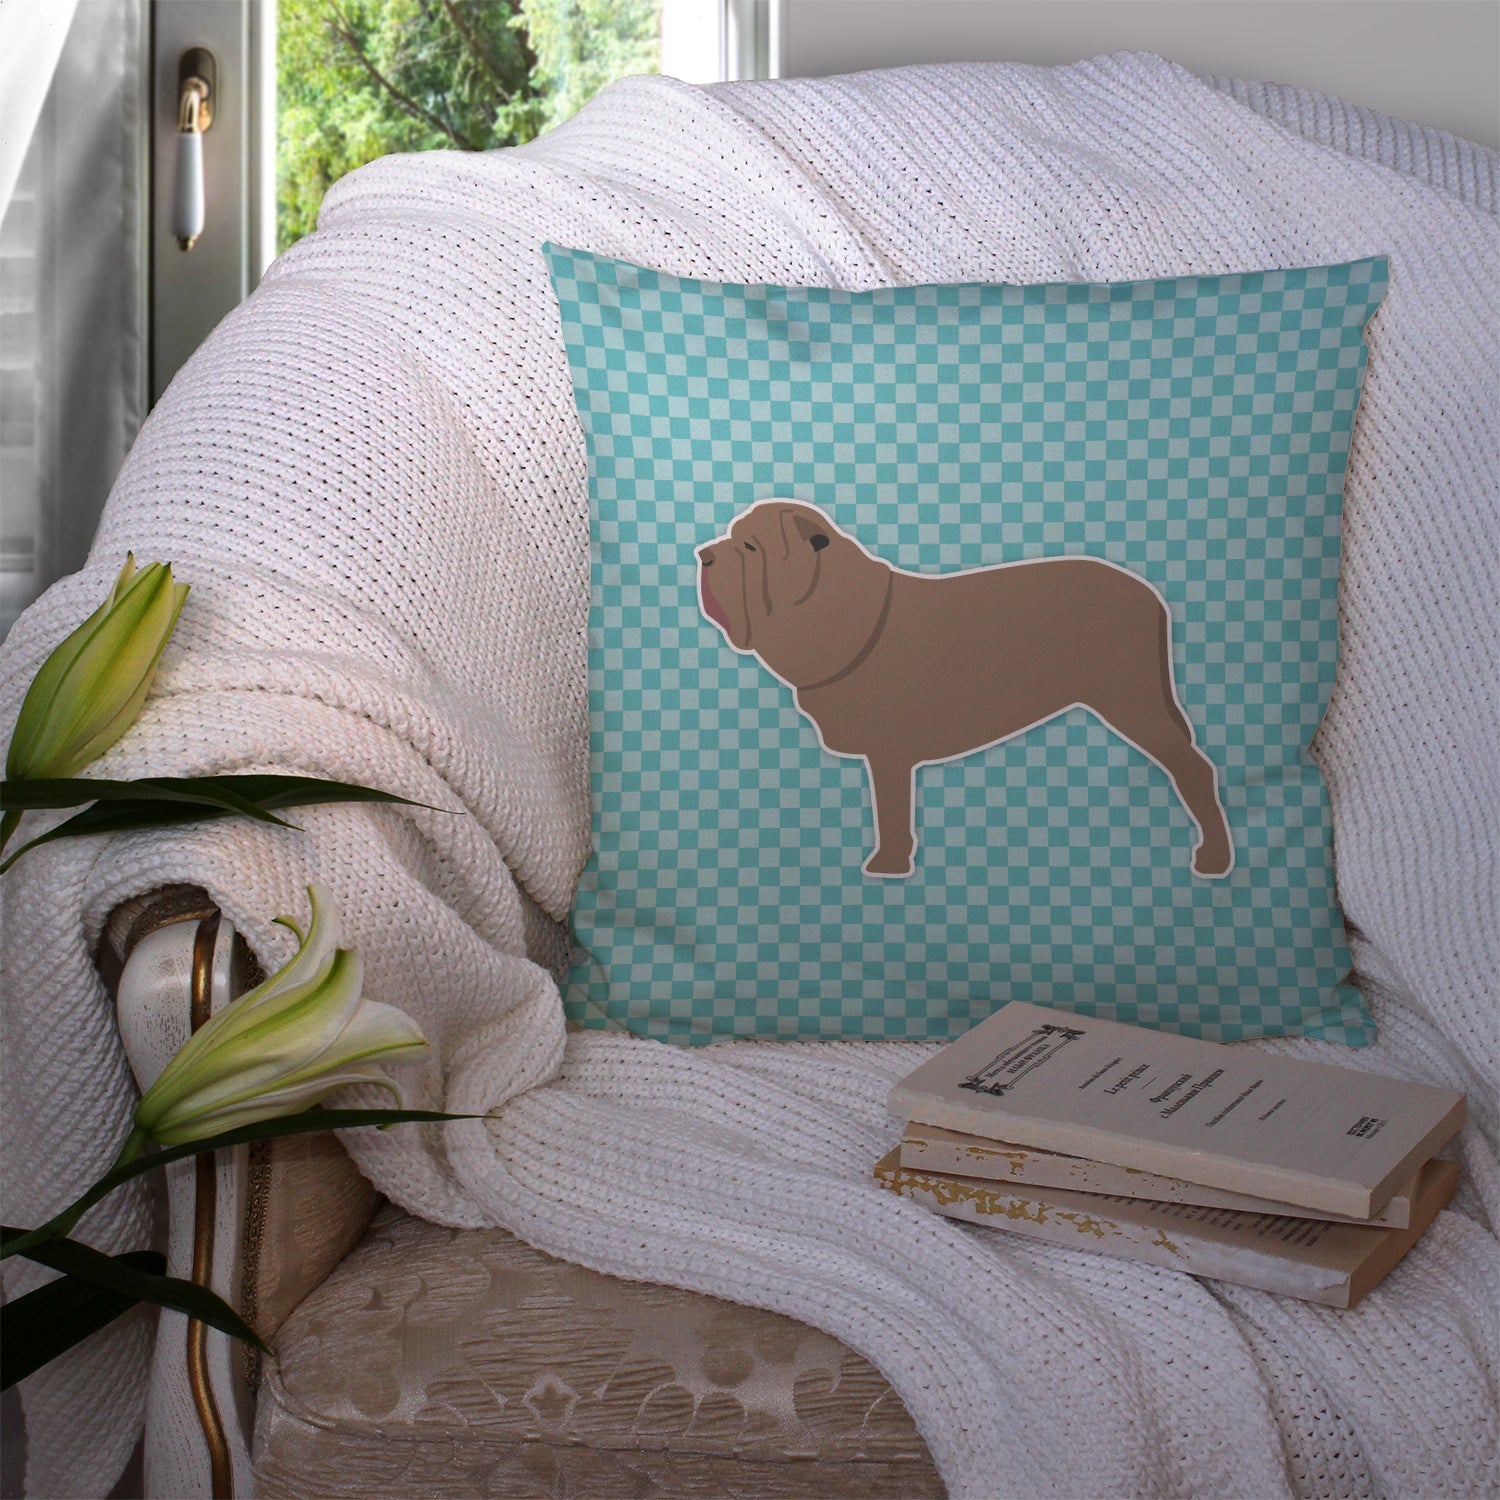 Neapolitan Mastiff Checkerboard Blue Fabric Decorative Pillow BB3765PW1414 - the-store.com